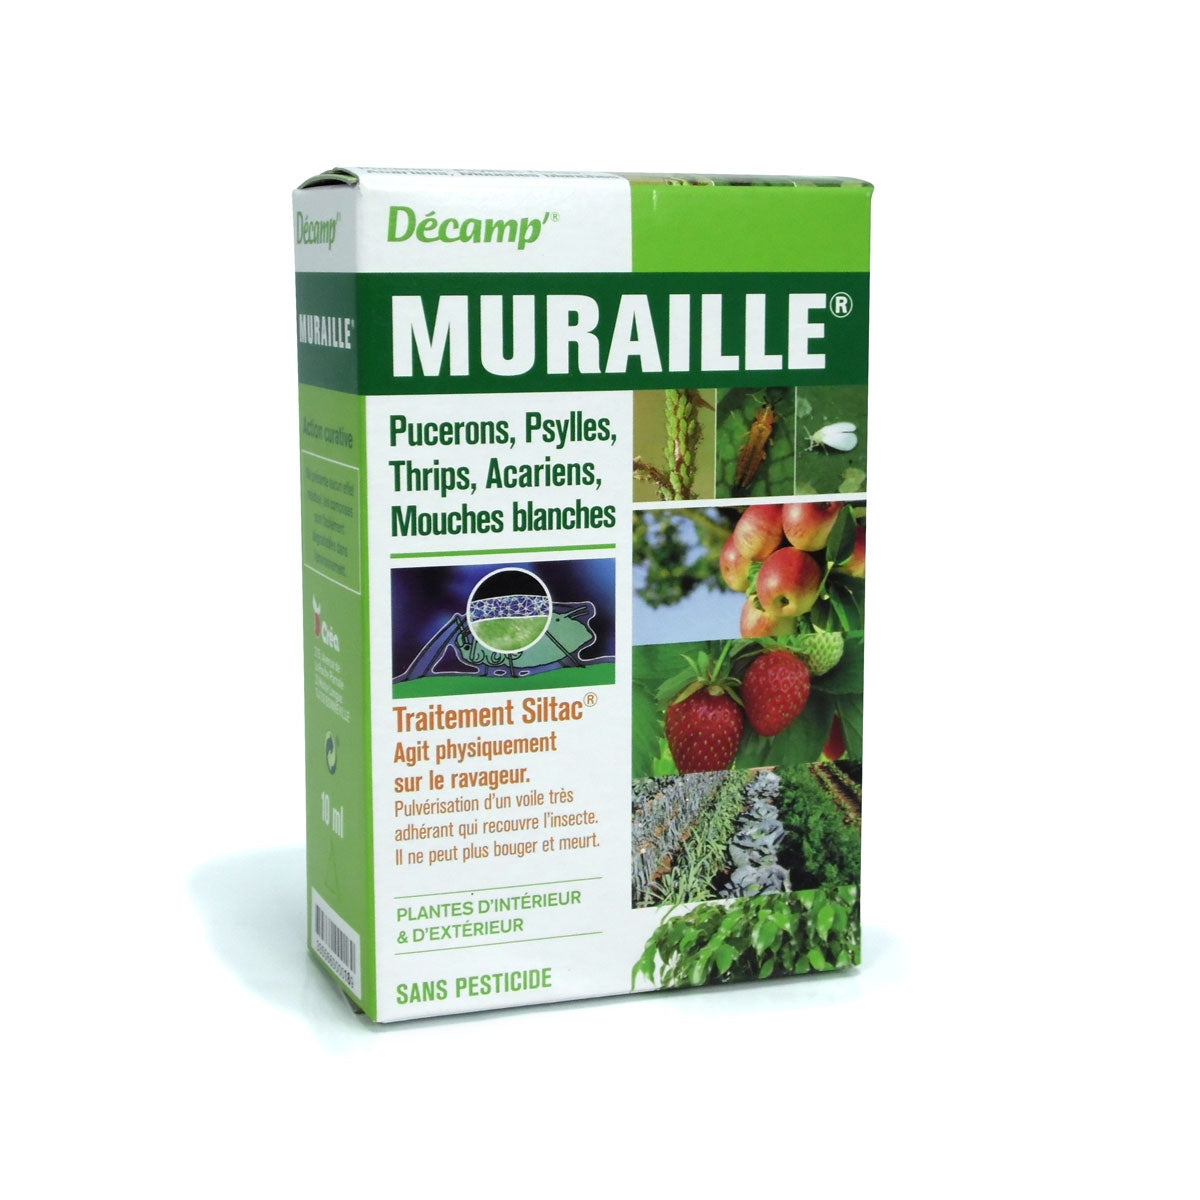 Traitement Décamp Muraille pour protéger vos plantes contre les thrips, mouches blanches, acariens et psylles